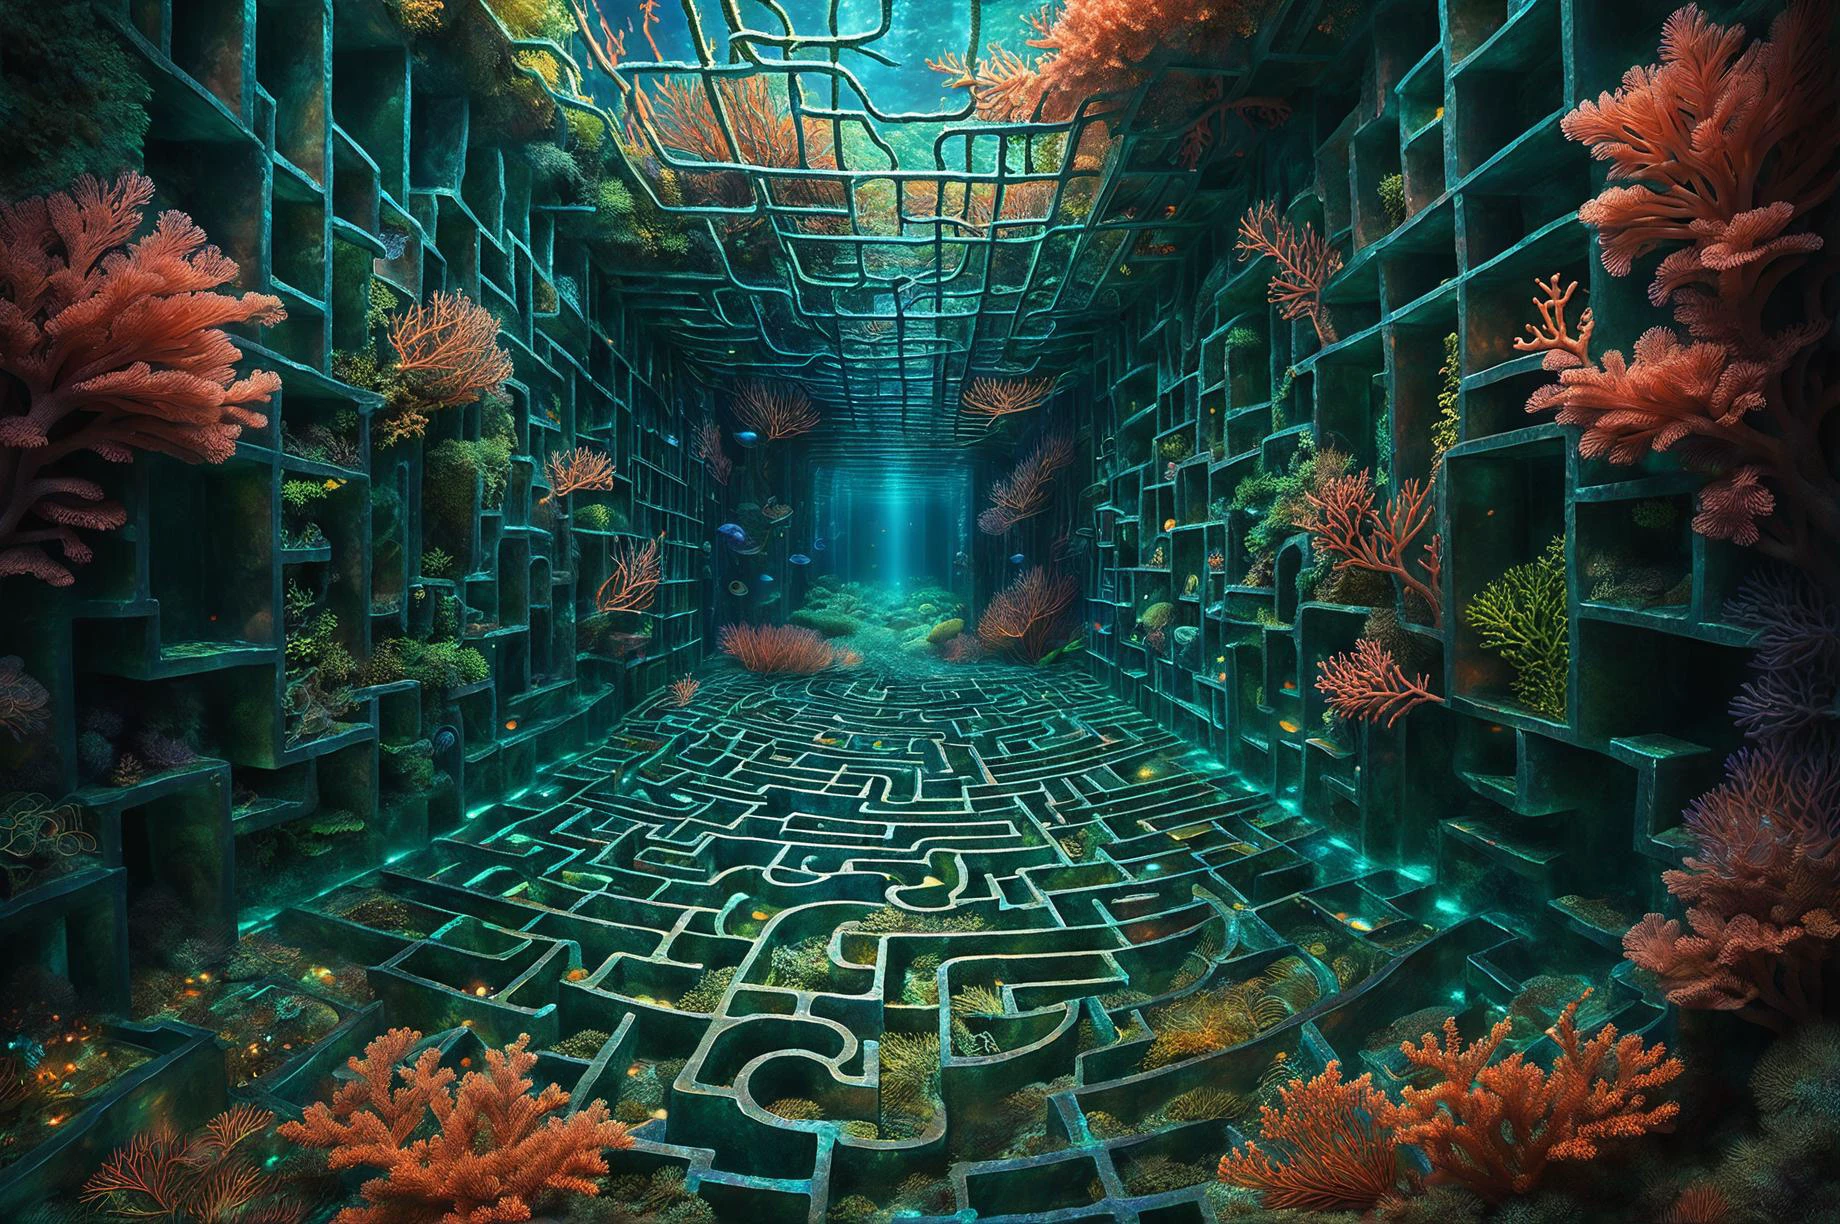 fotorrealista, ilustração digital detalhada de um labirinto de coral com paredes iridescentes, lar de criaturas marinhas esquivas que navegam pelo labirinto com graça, deixando rastros de trilhas biológicas brilhantes em seu rastro PENeonUV, liminar